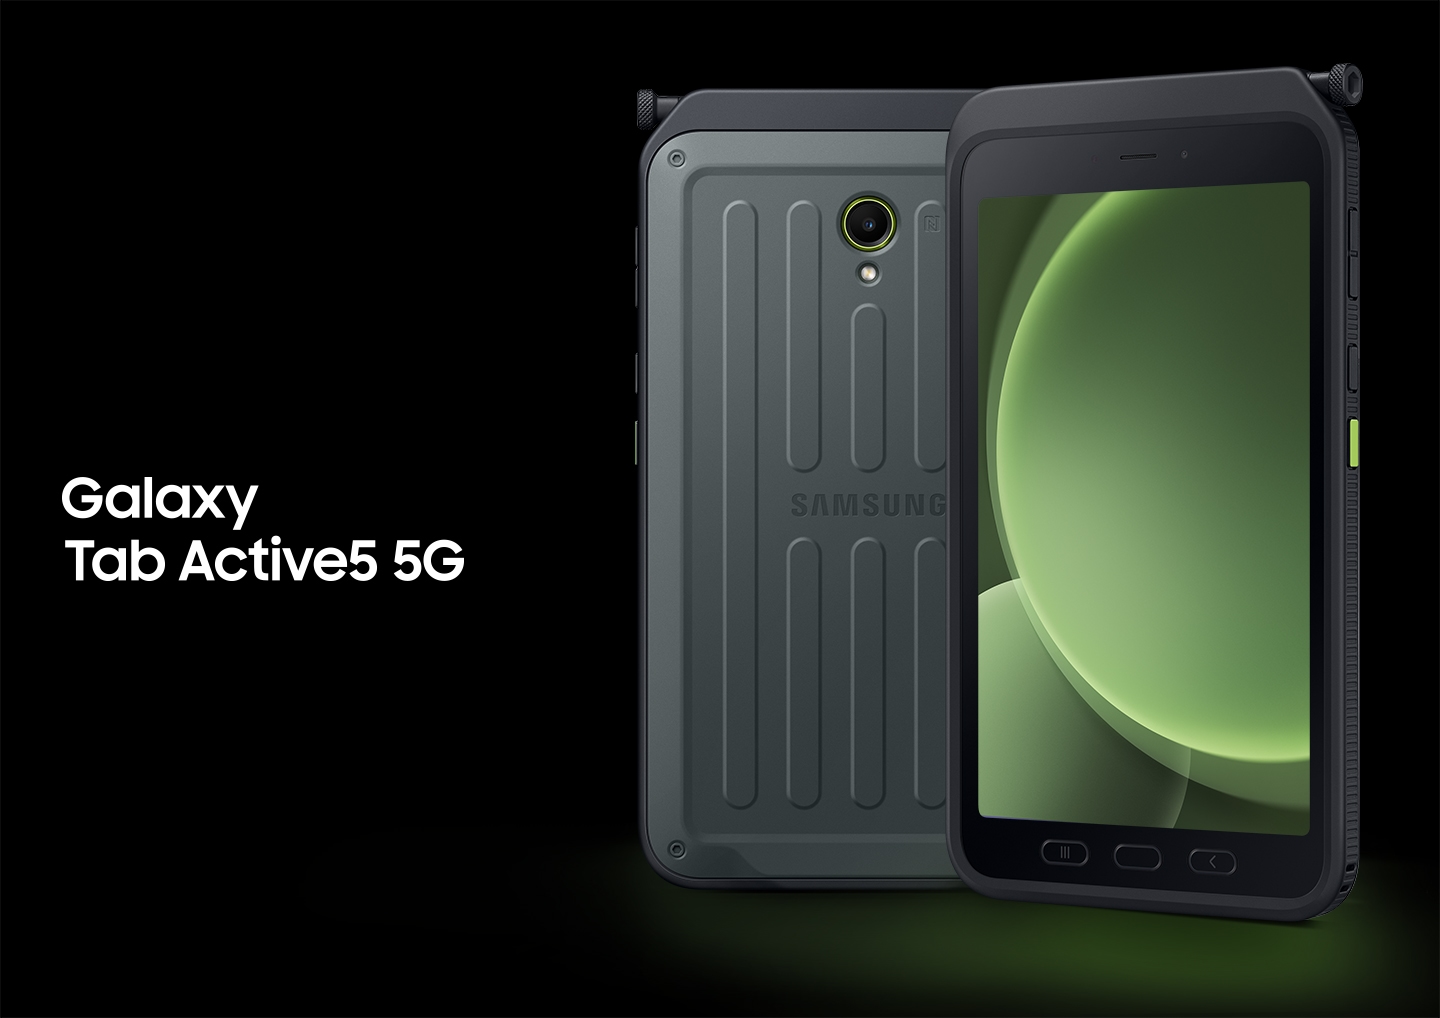 顯示了兩台 Galaxy Tab Active5 5G 裝置。 左側設備顯示背面，右側設備顯示前螢幕，螢幕上顯示綠色輻射圓形。